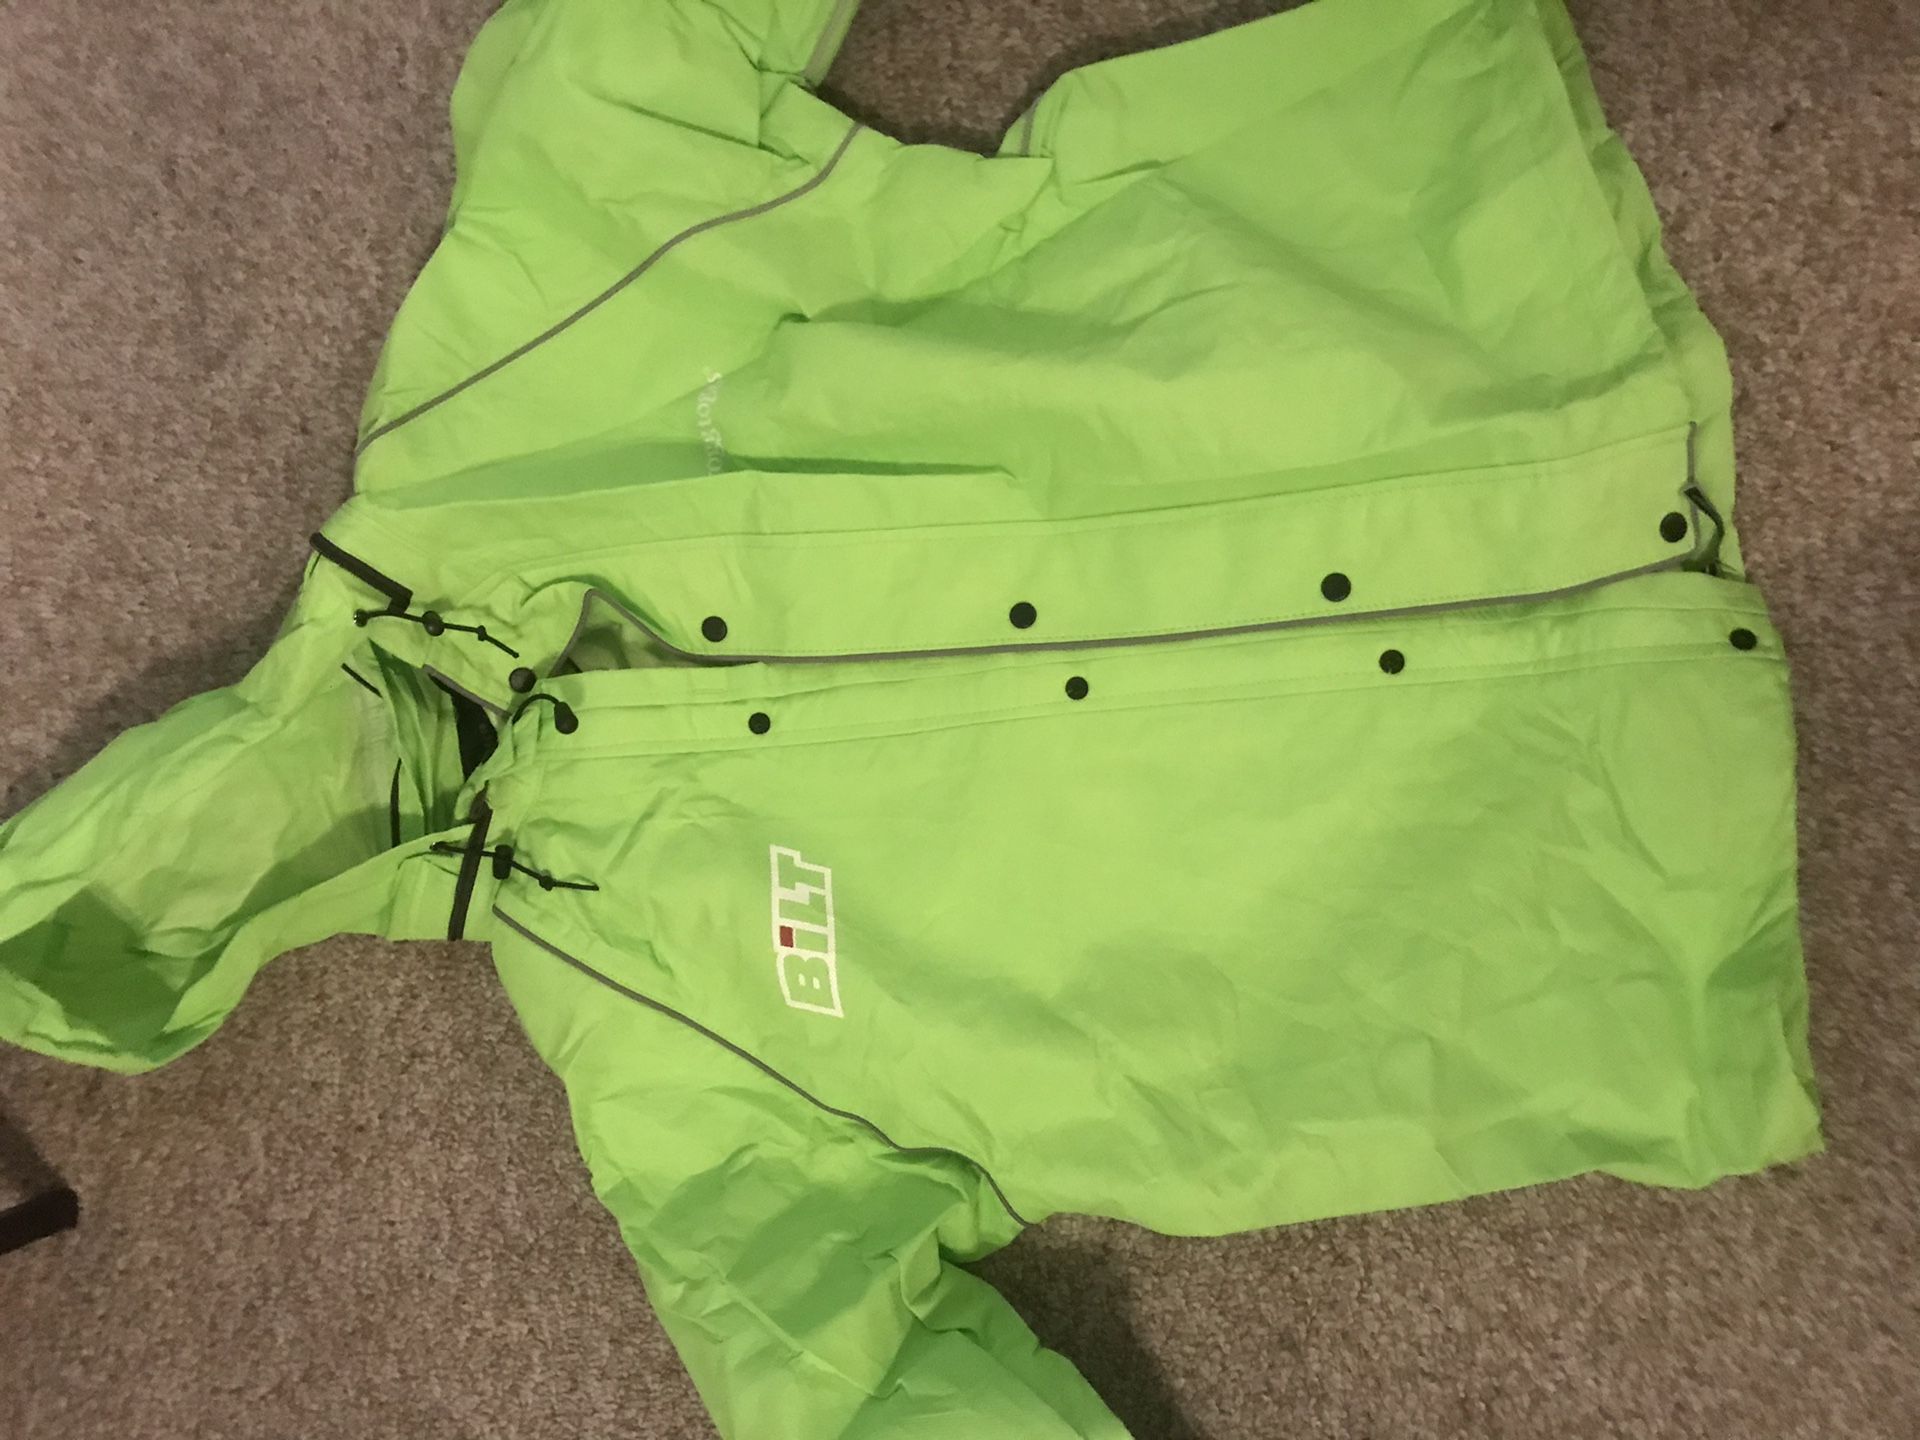 Waterproof motorcycle jacket and pants